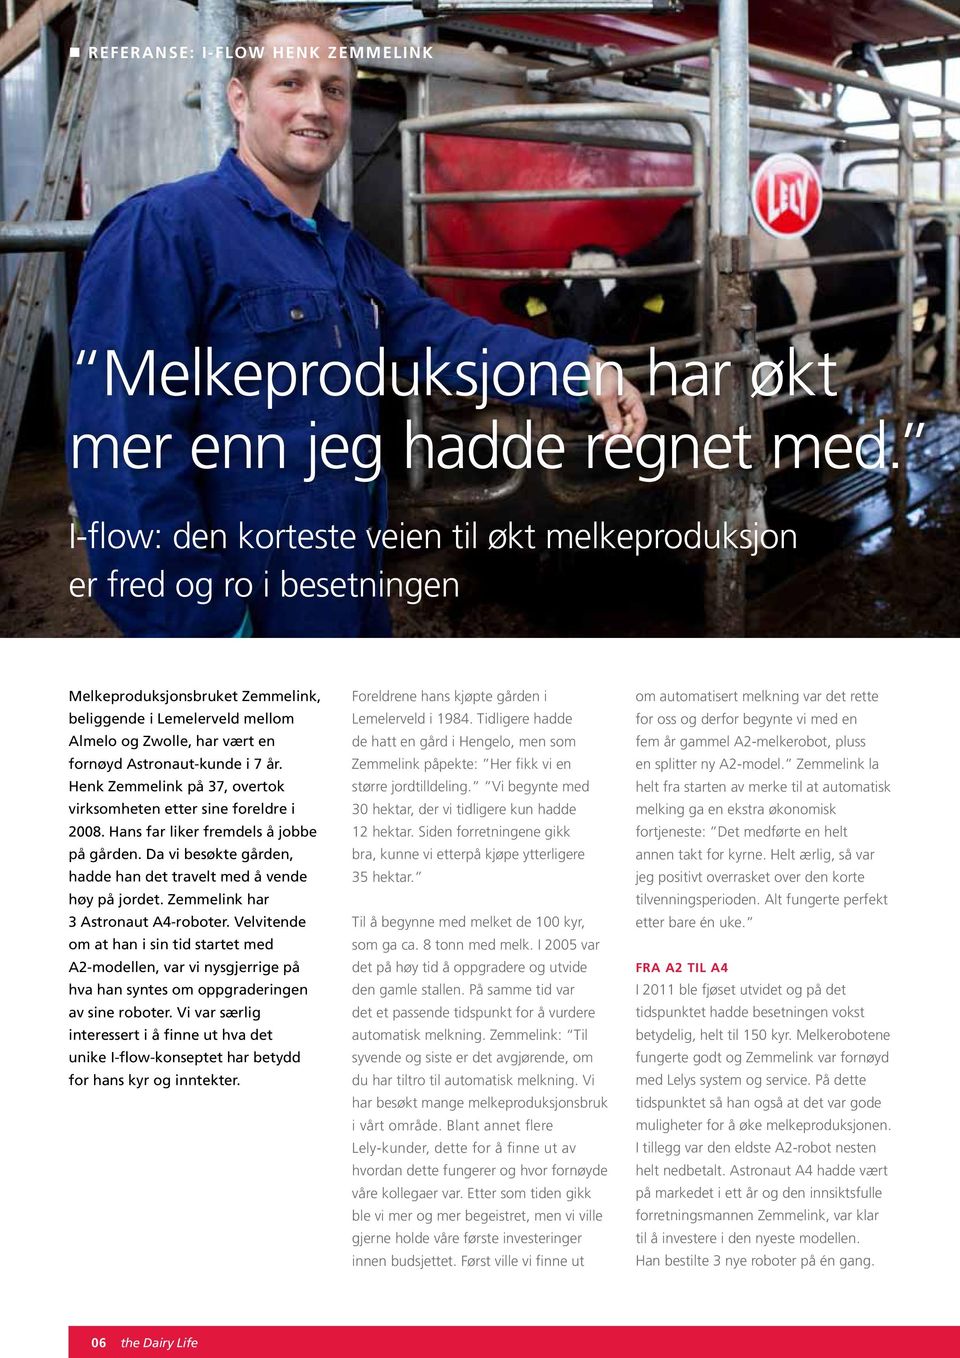 i 7 år. Henk Zemmelink på 37, overtok virksomheten etter sine foreldre i 2008. Hans far liker fremdels å jobbe på gården. Da vi besøkte gården, hadde han det travelt med å vende høy på jordet.